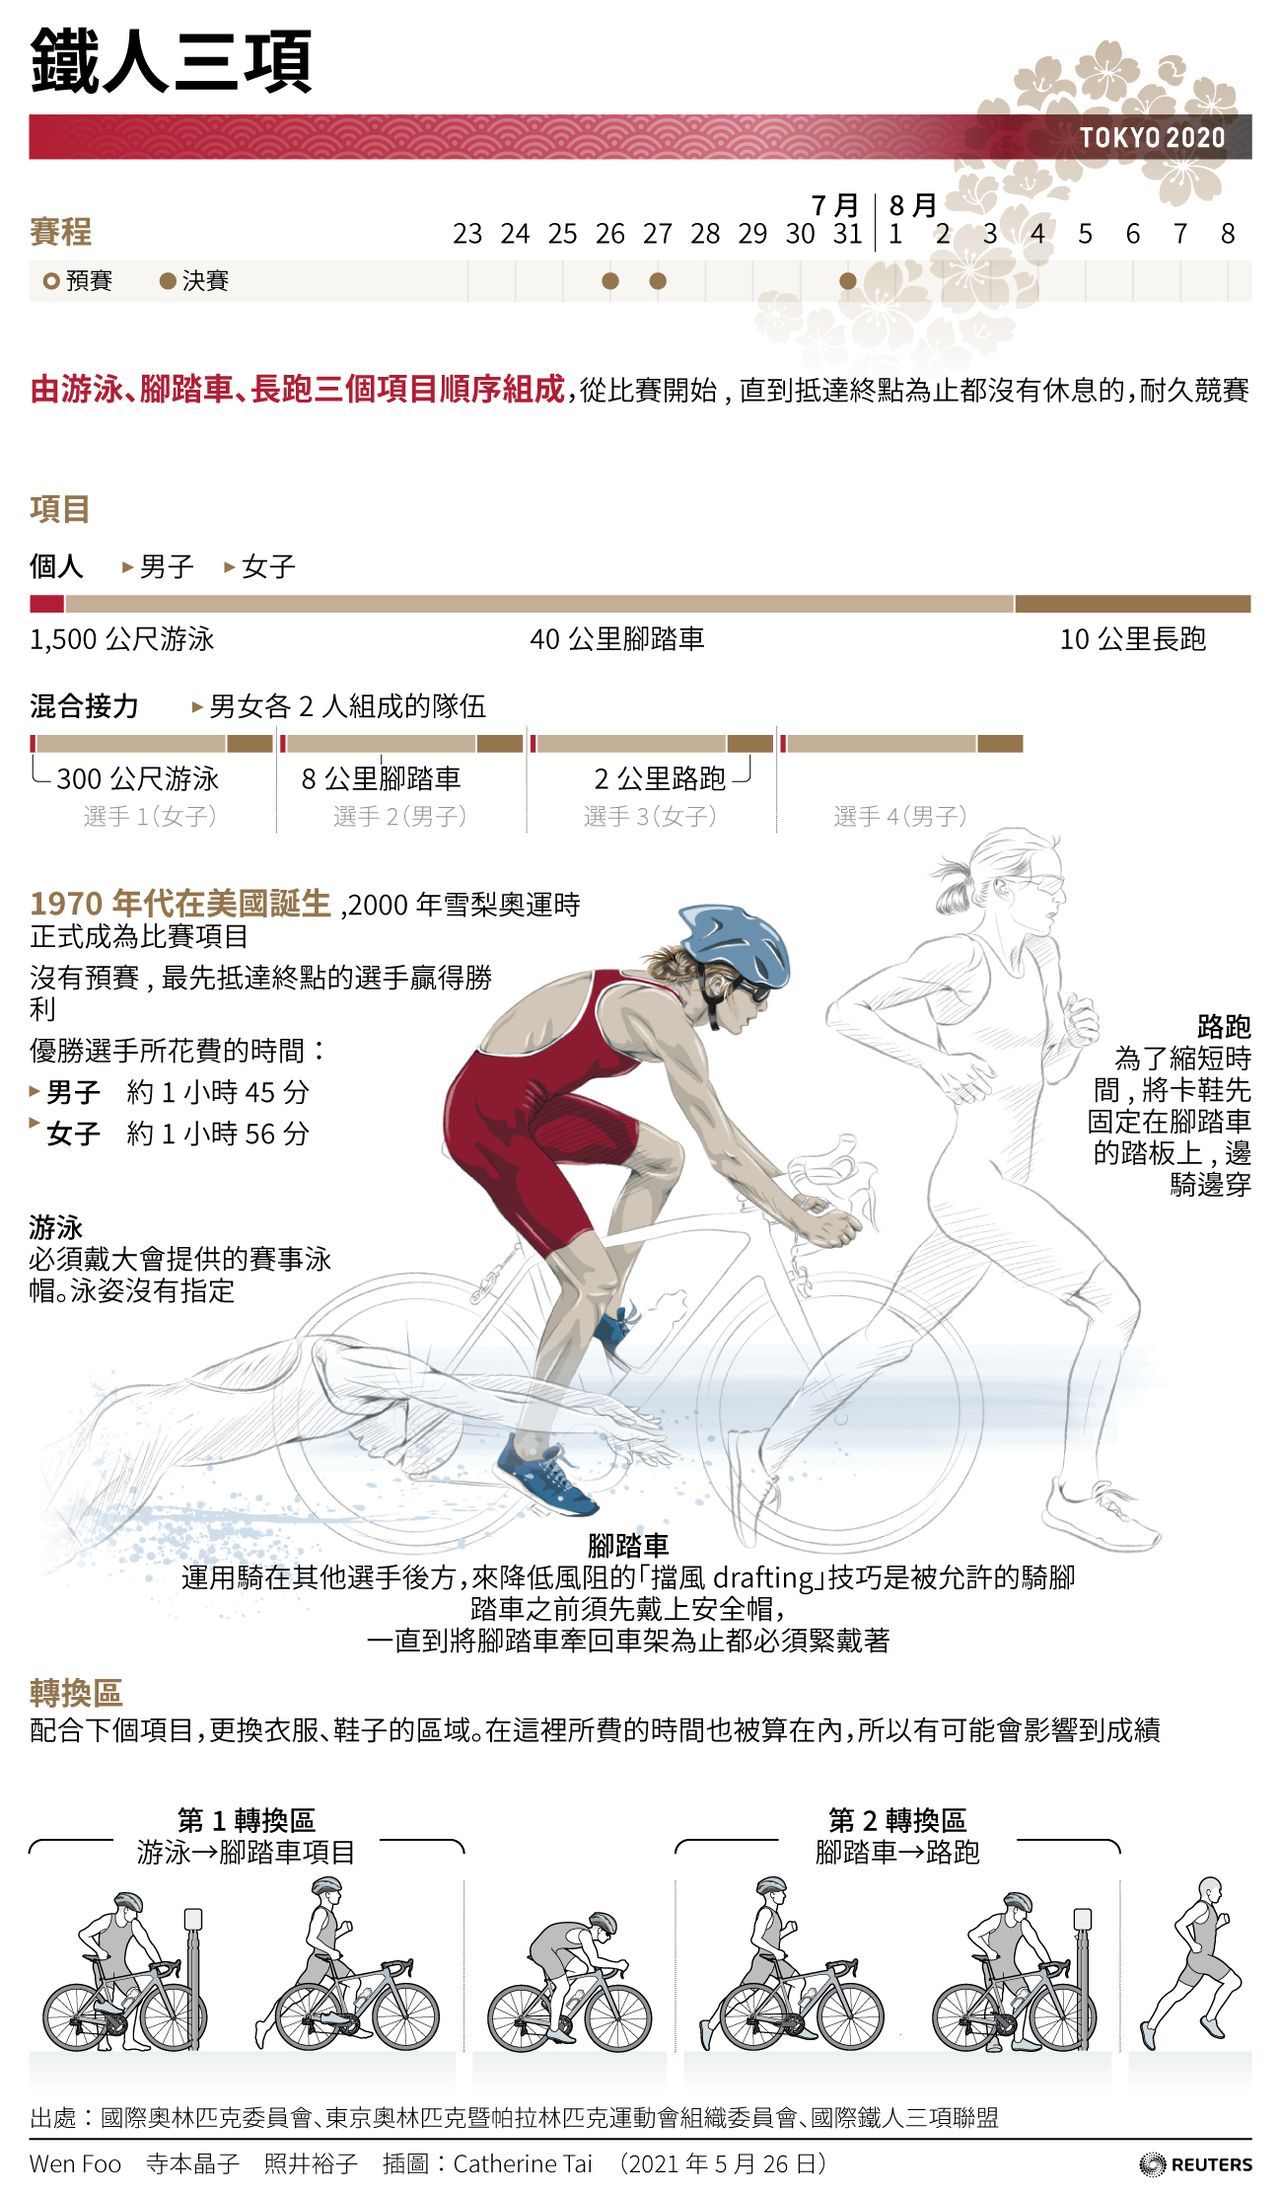 鐵人三項【東京奧運 競賽解說】由游泳、腳踏車、長跑三個項目順序組成，從比賽開始,直到抵達終點為止都沒有休息的，耐久競賽